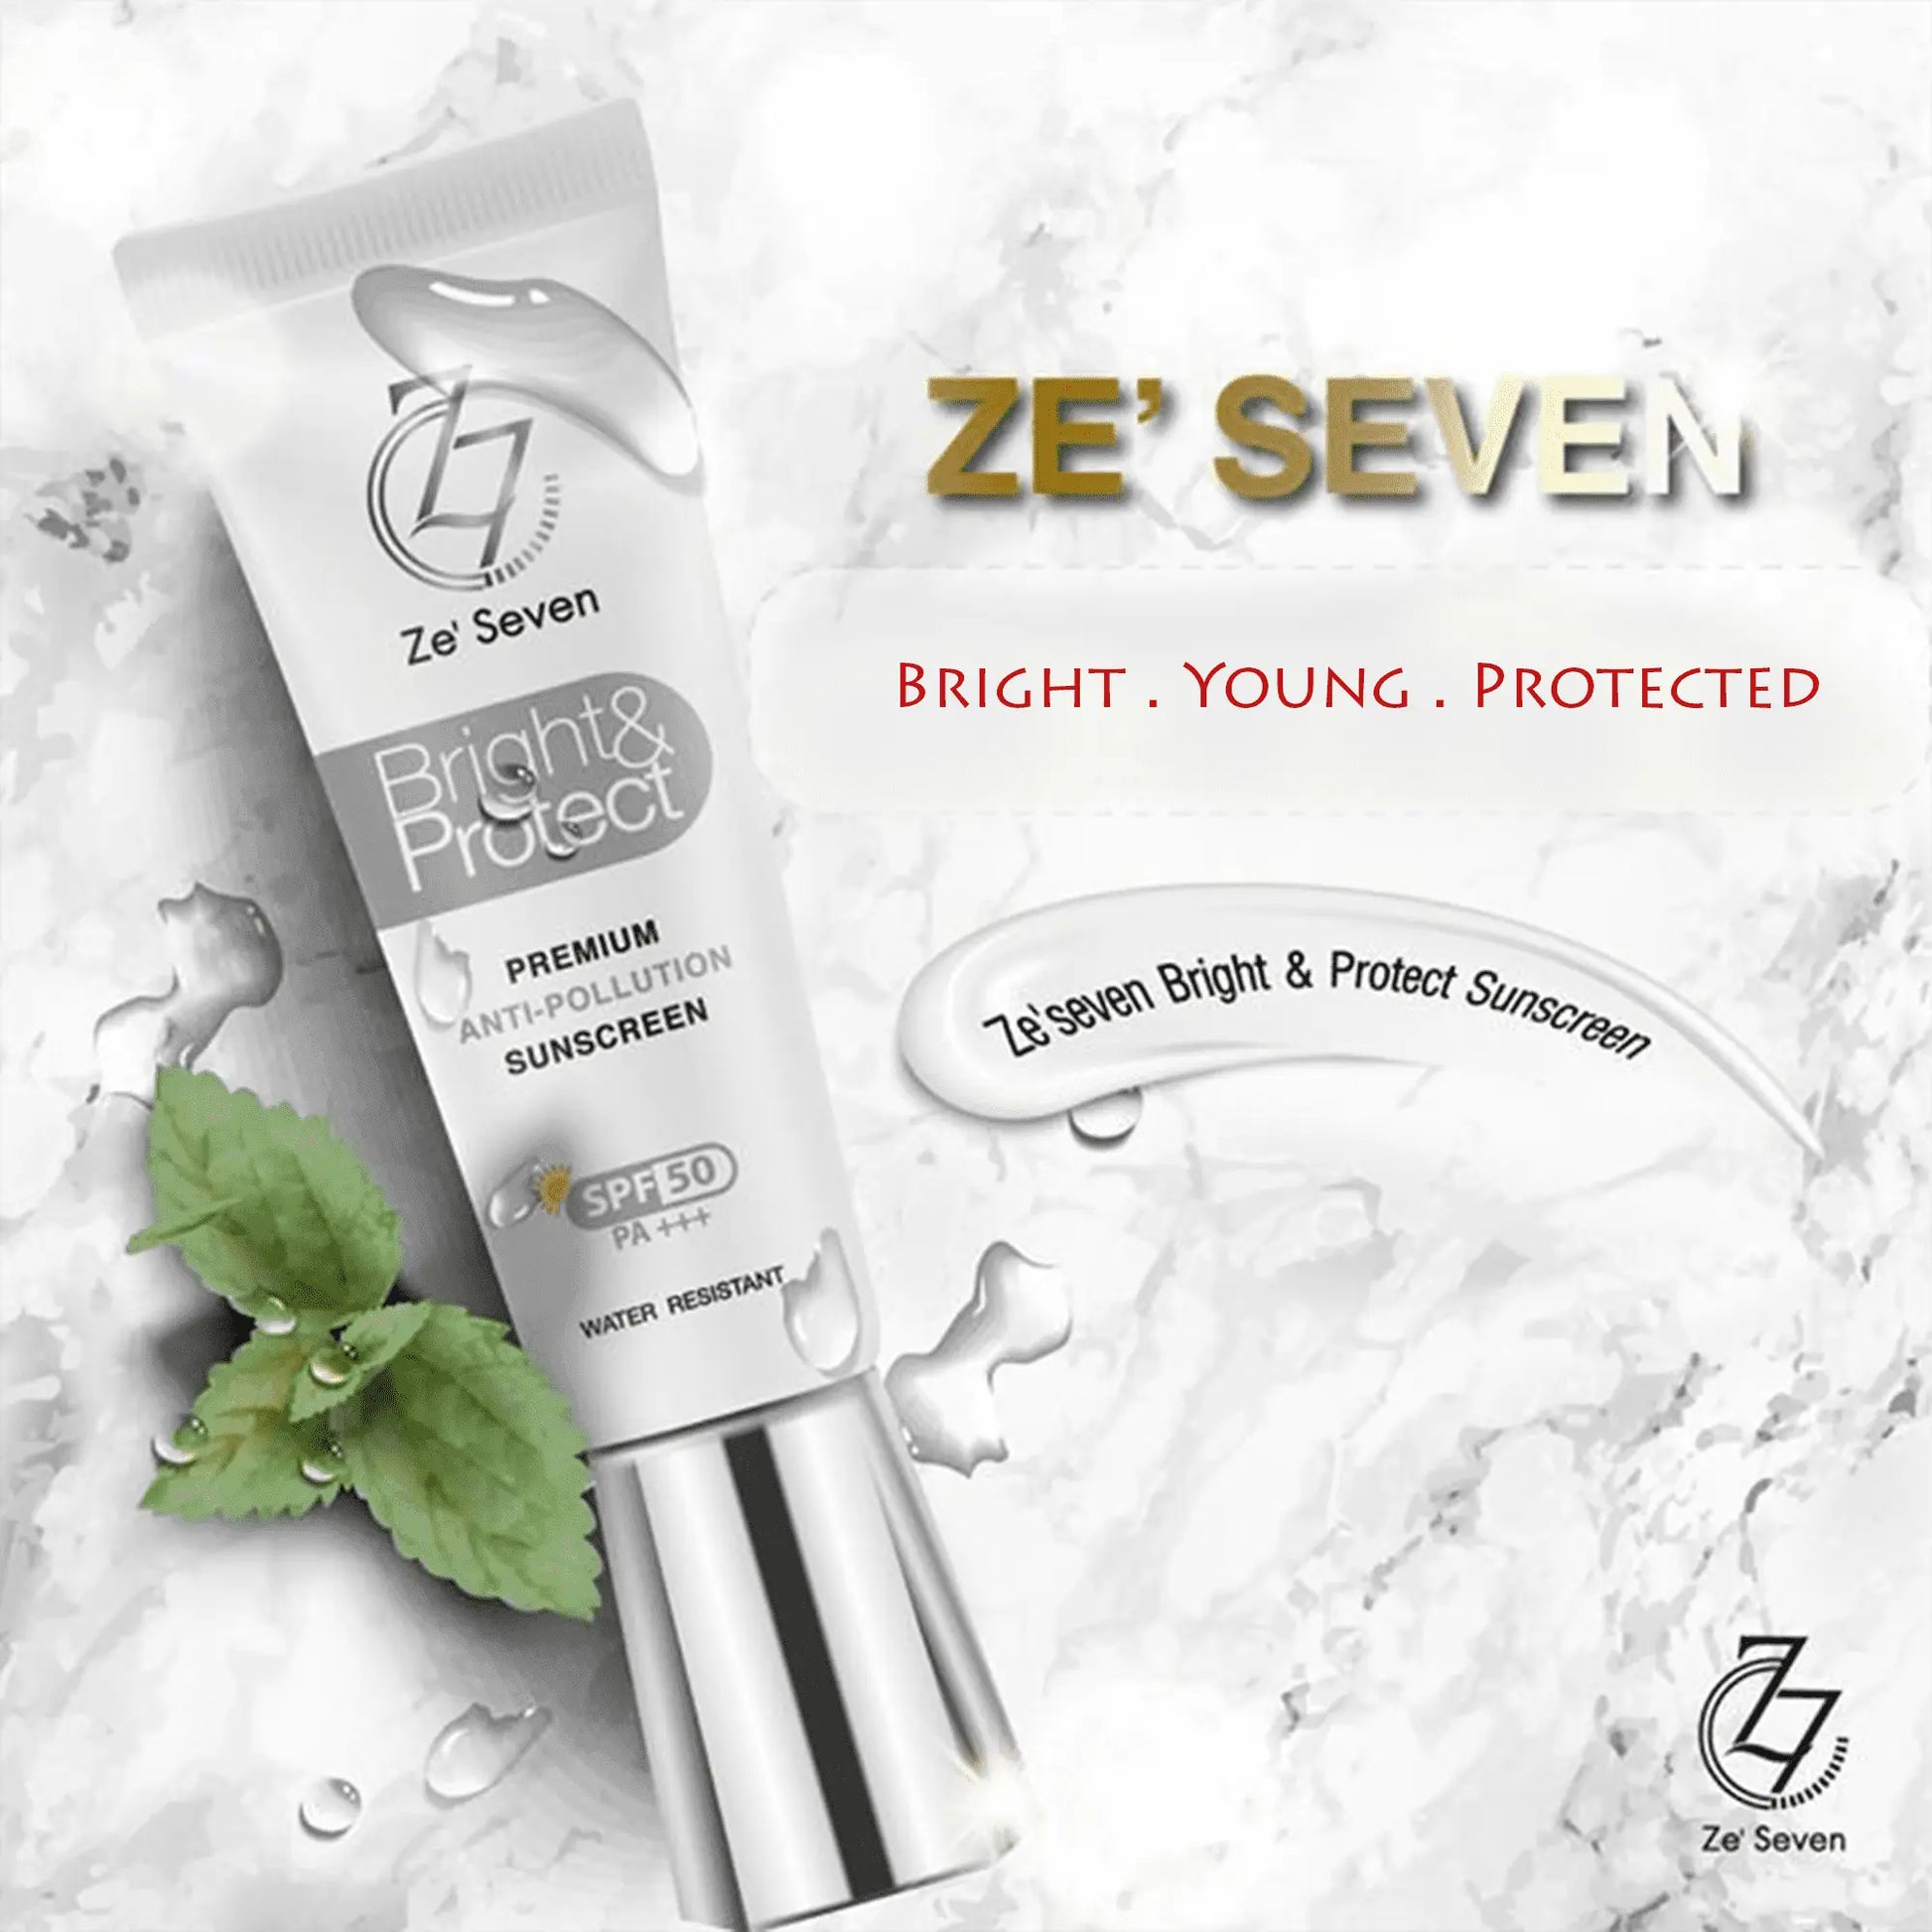 ZE'SEVEN BRIGHT & PROTECT SUNSCREEN SPF50 PA - WELLVY wellness & beauty